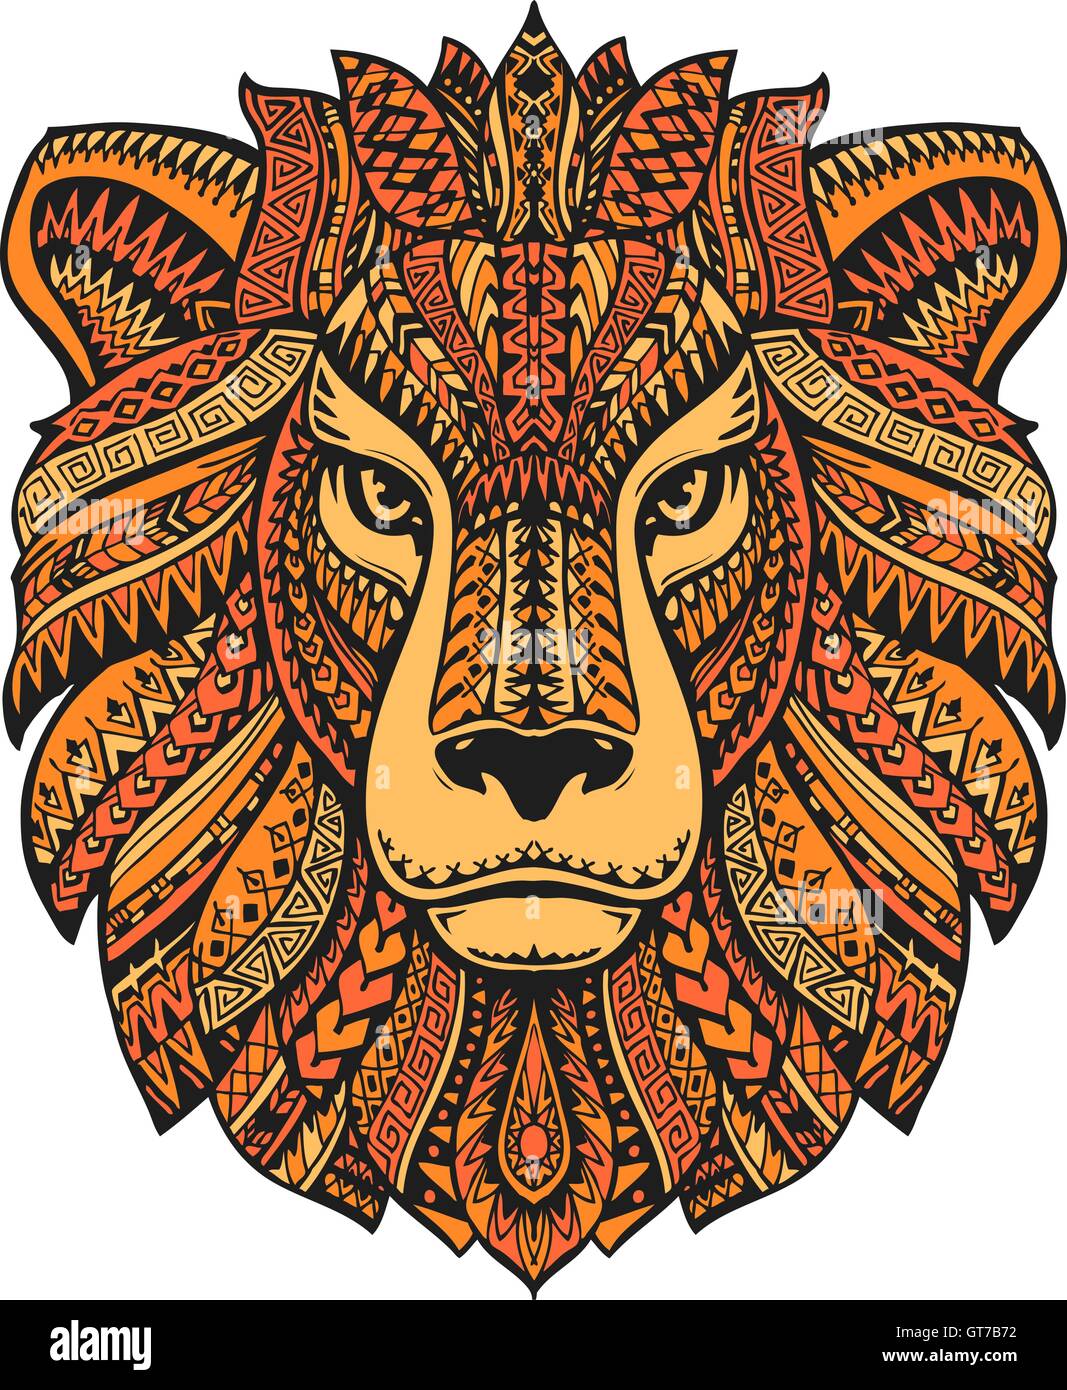 Löwenkopf isolierten auf weißen Hintergrund. Handgezeichnete Vektor-Illustration mit Ethno-Mustern Stock Vektor